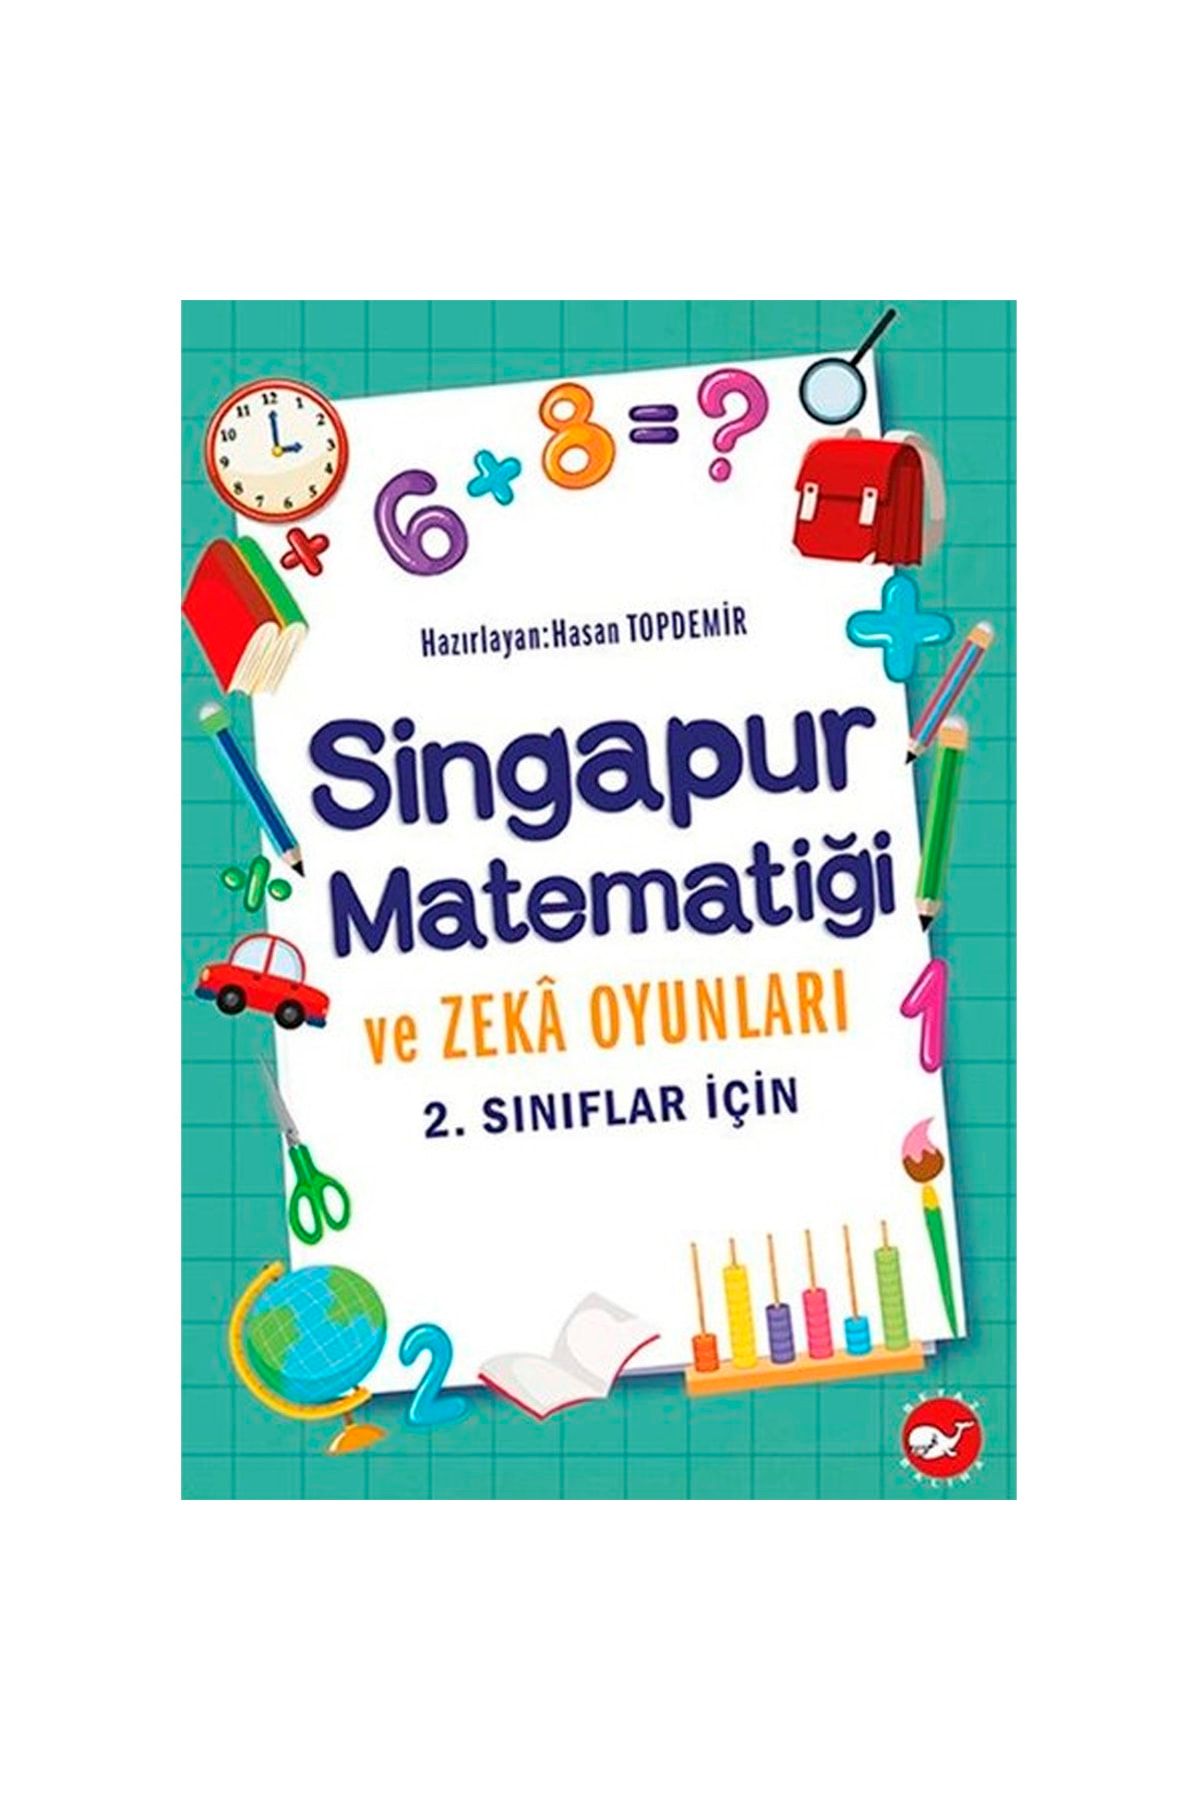 Beyaz Balina Yayınları Singapur Matematiği Ve Zeka Oyunları 2. Sınıflar İçin